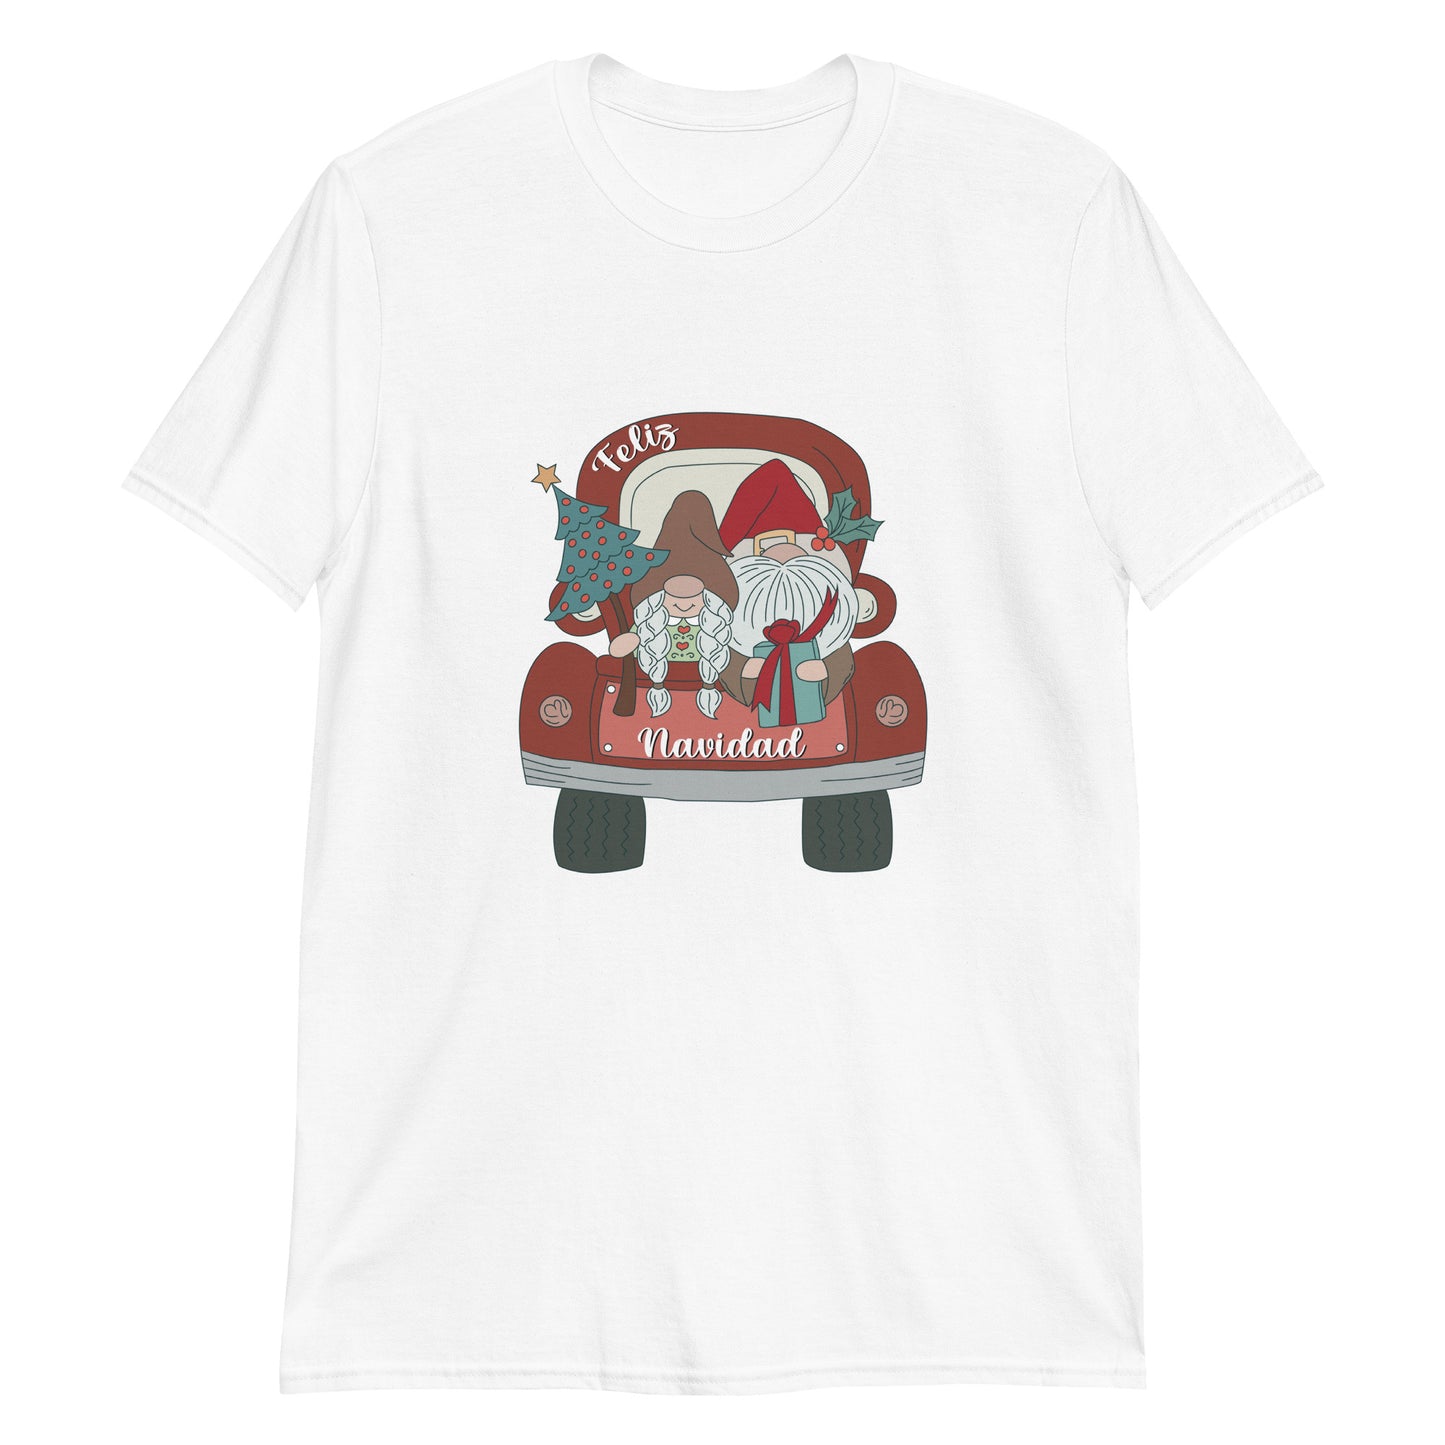 Santa and Mrs. Claus Christmas T-shirt